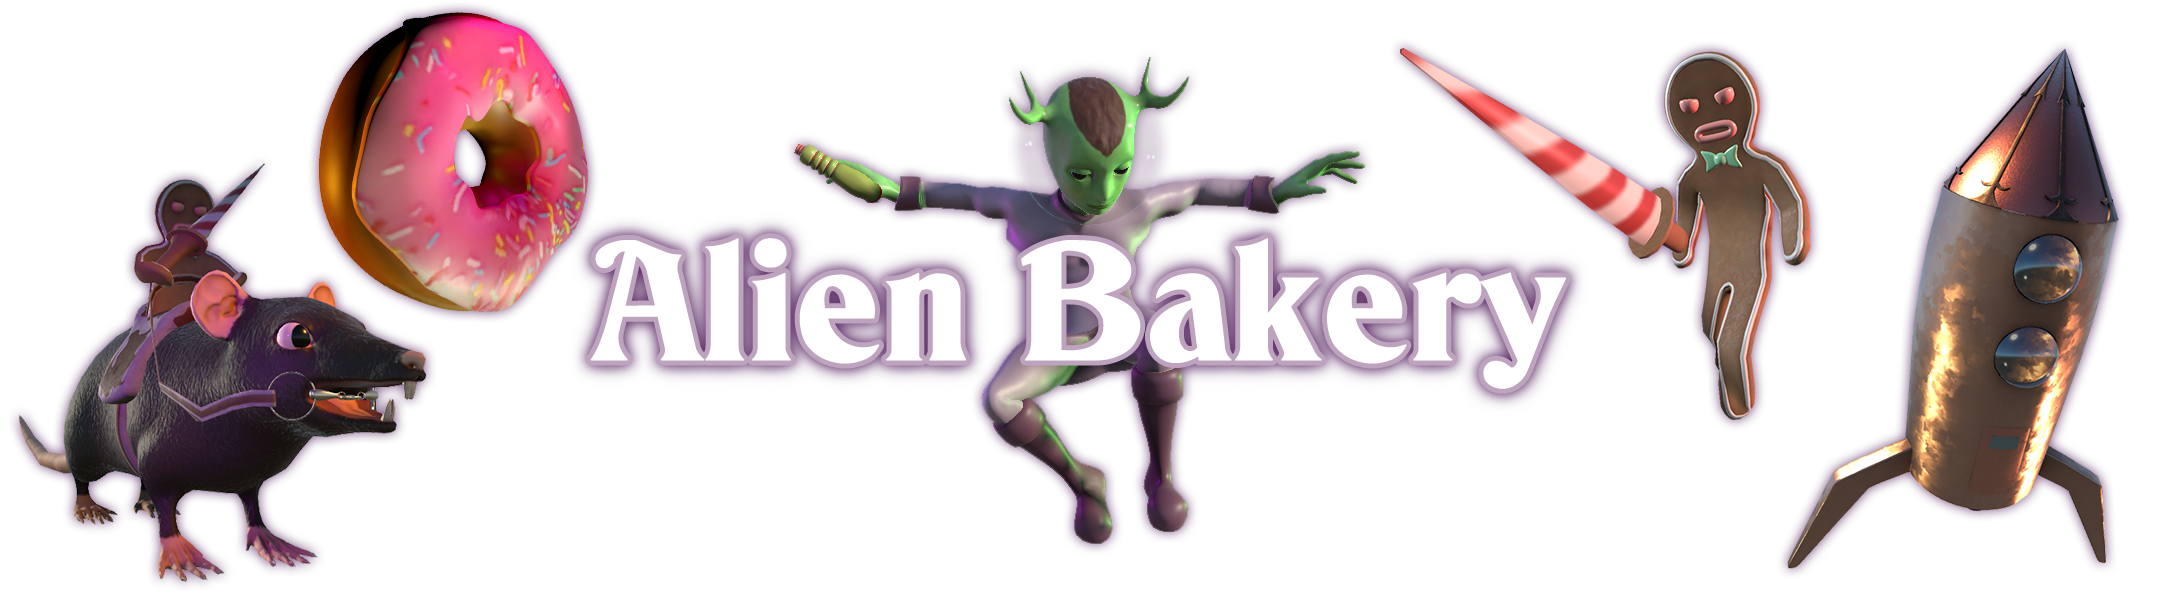 Alien Bakery